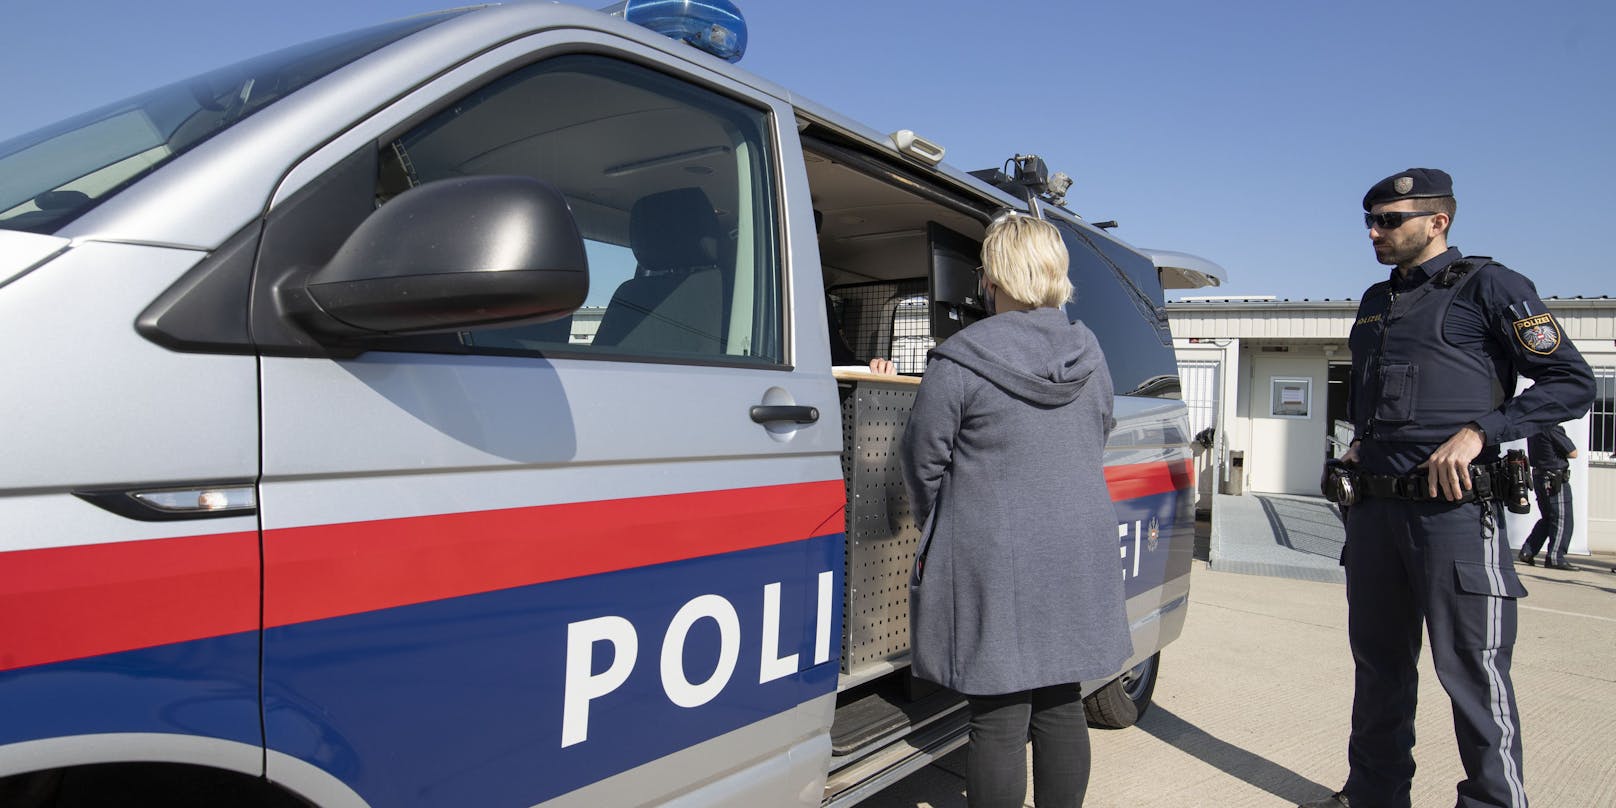 Ein Polizeibus zur mobilen Datenerfassung von geflüchteten Menschen am Grenzübergang zwischen Österreich und Ungarn in Nickelsdorf.